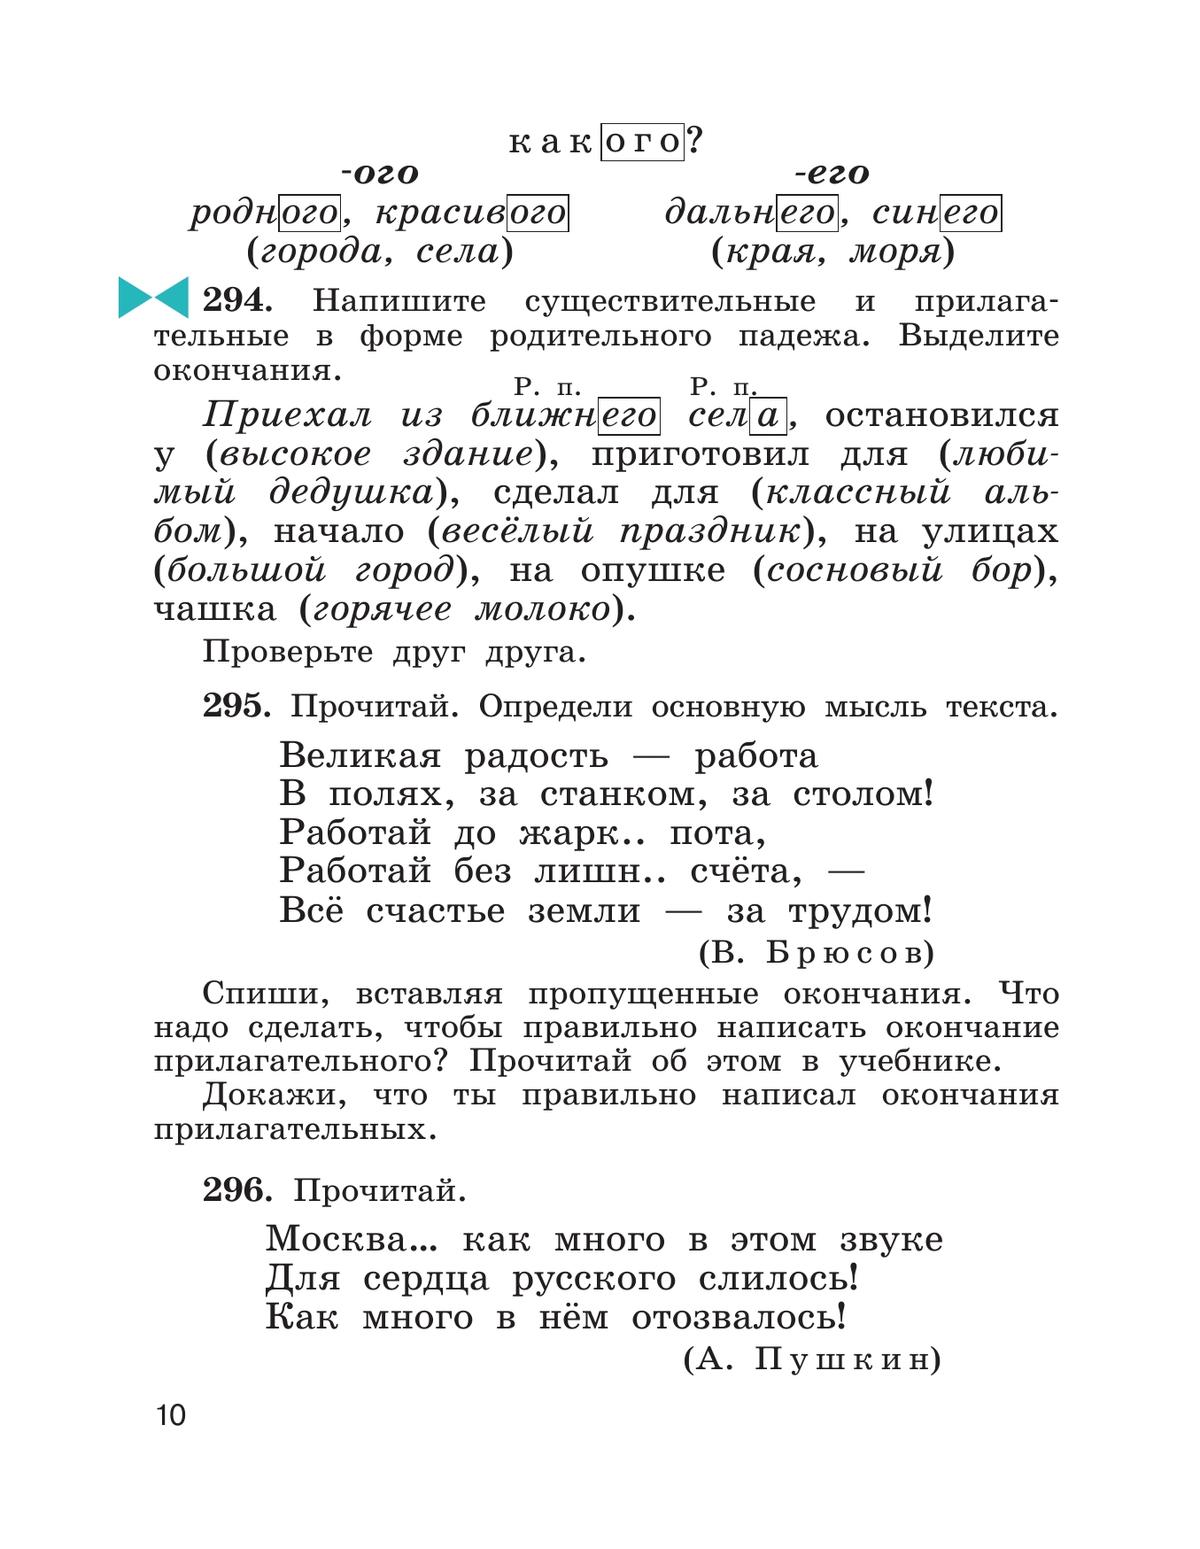 Русский язык. 4 класс. Учебник. В 2 ч. Часть 2 9